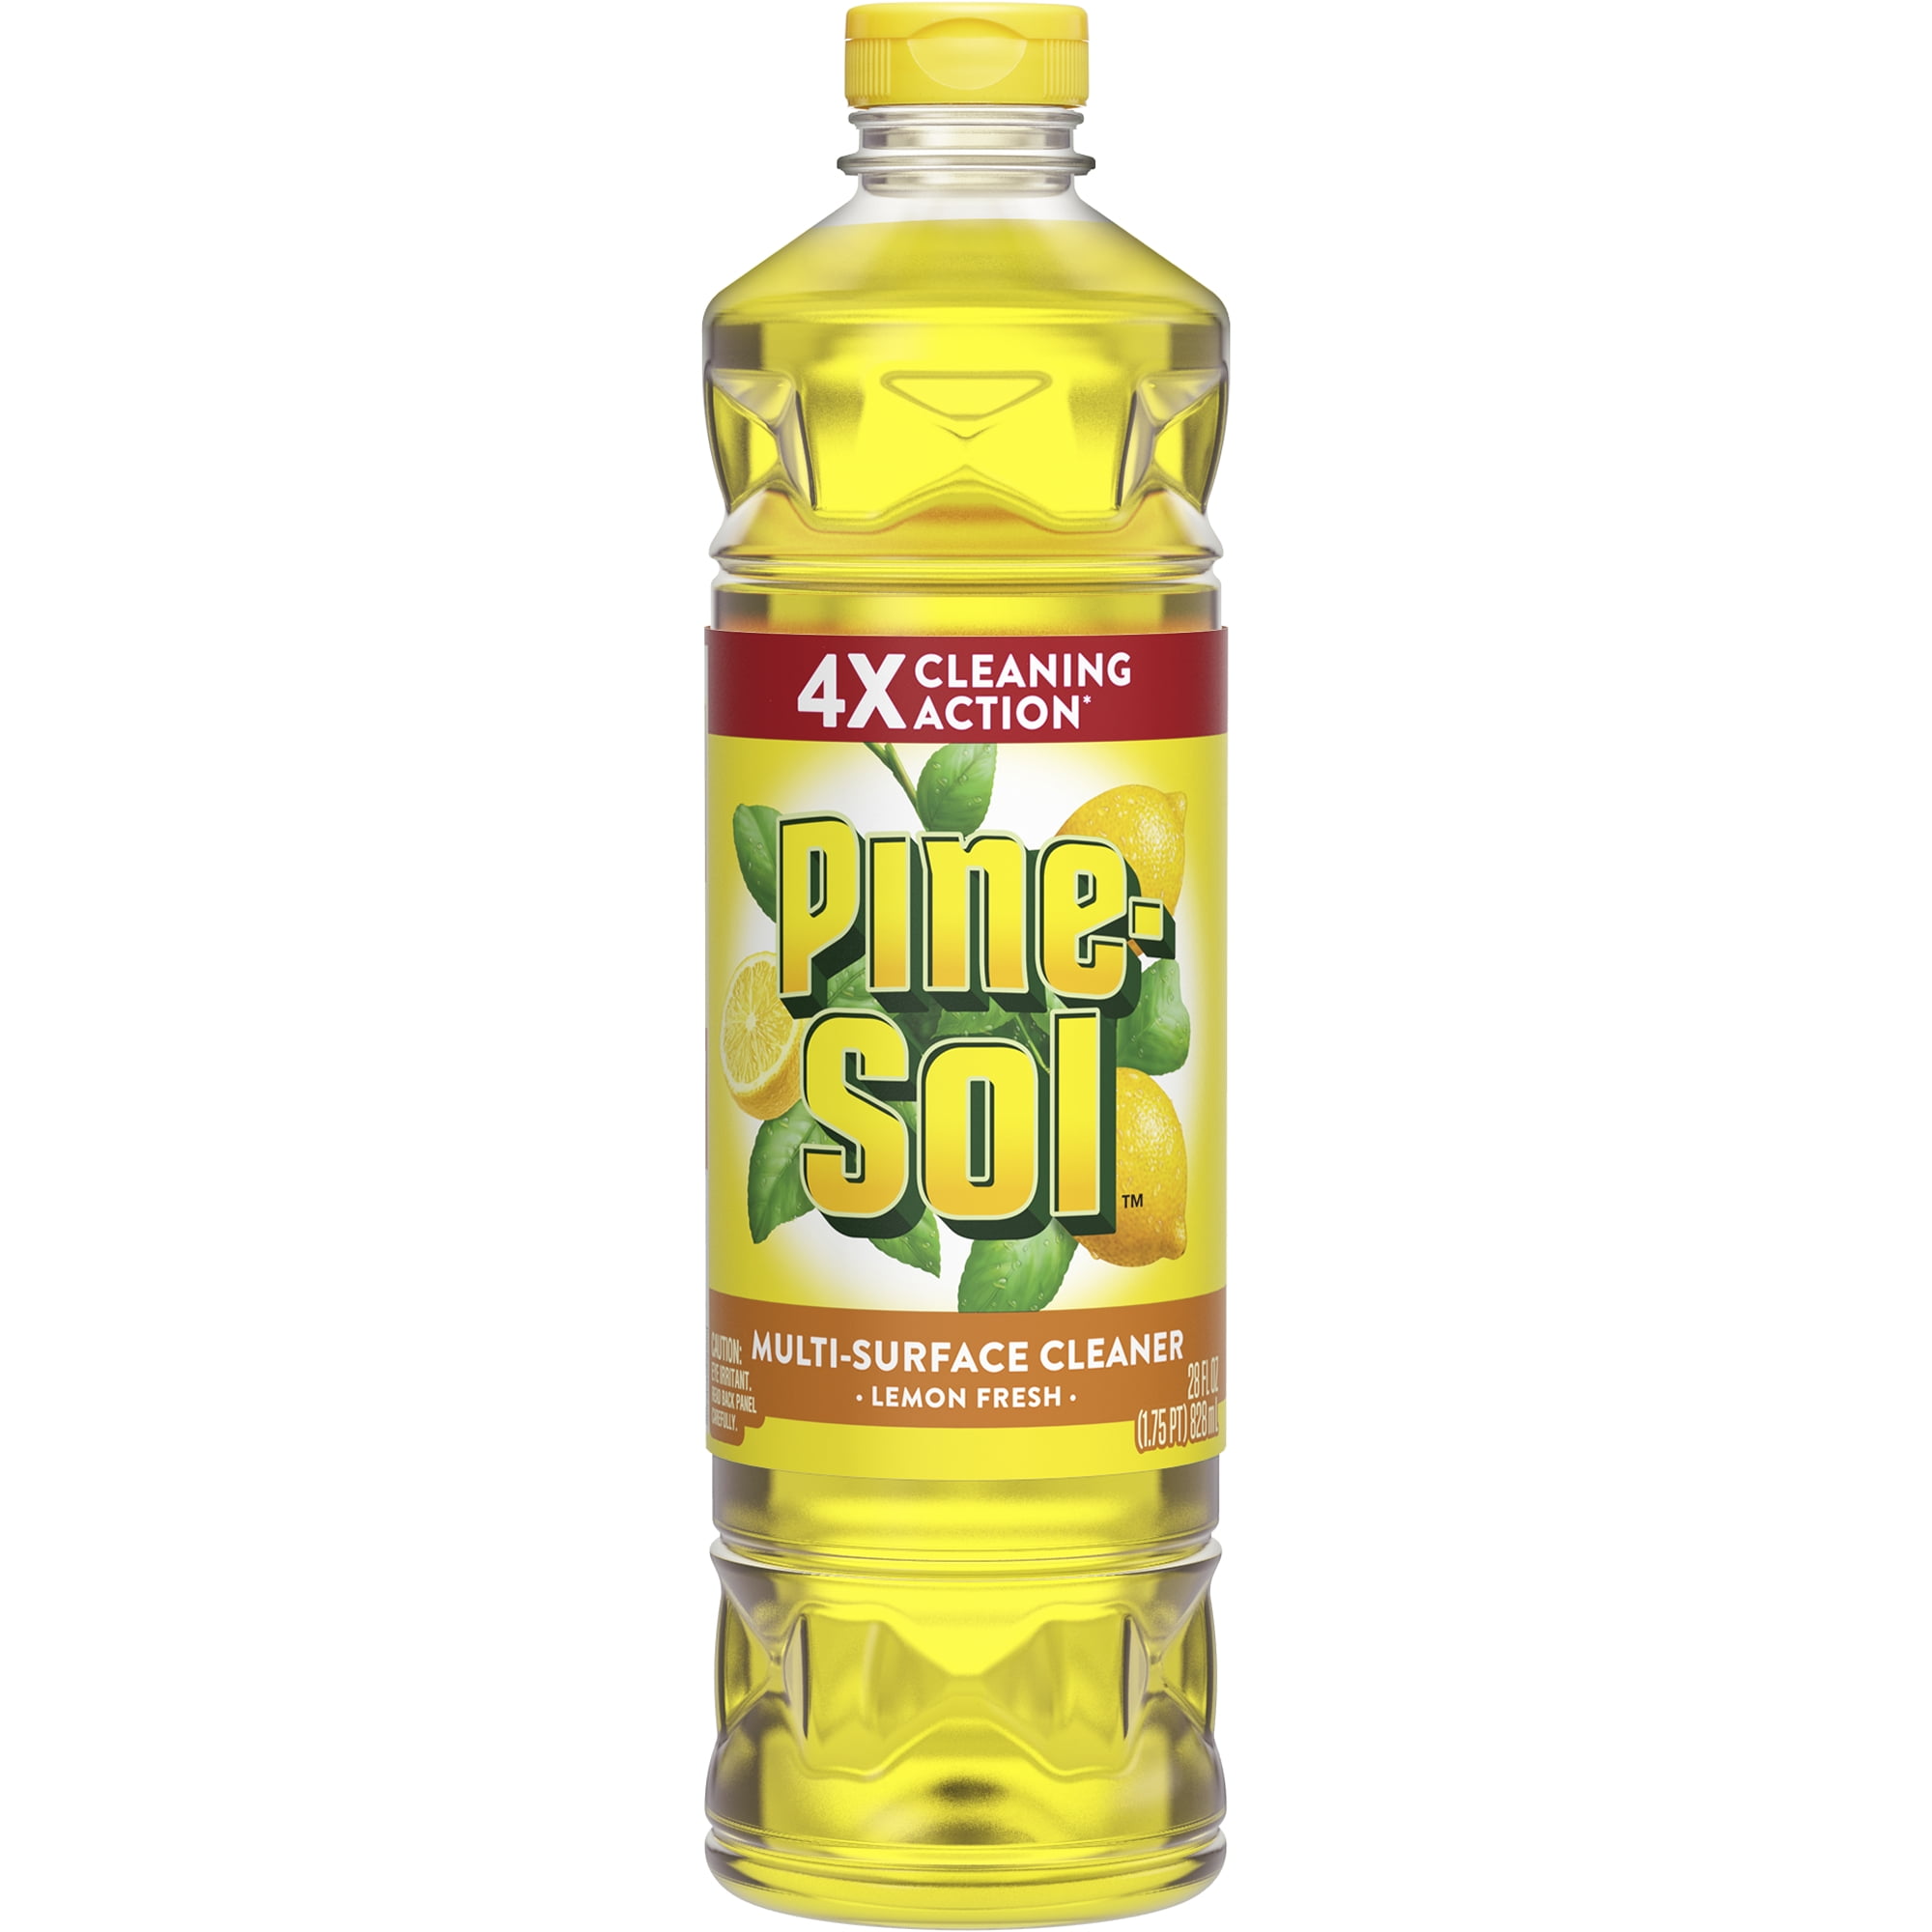 Pine Sol All Purpose Cleaner Lemon Fresh 28 Ounce Bottle